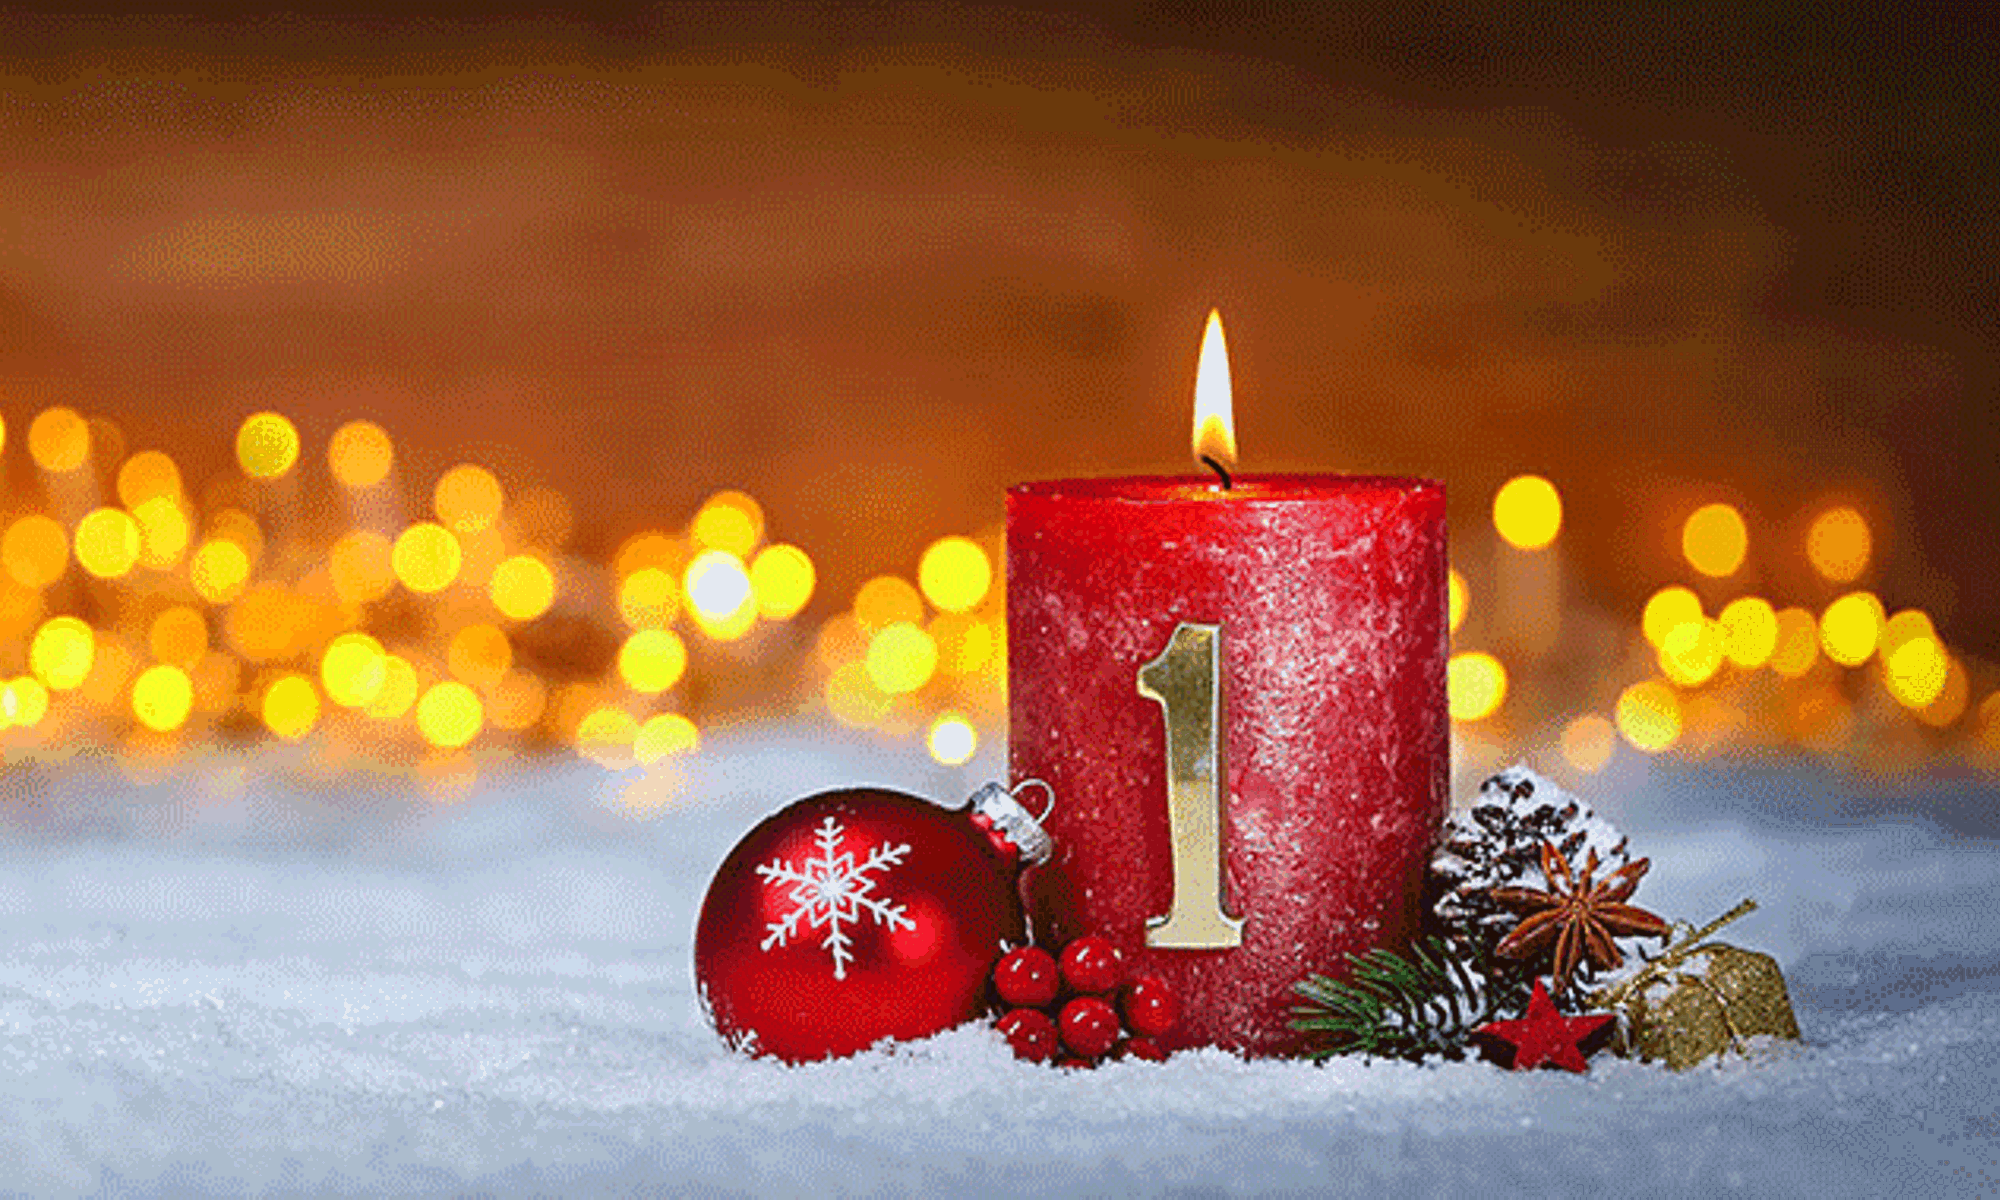 Am ersten Sonntag im Dezember feiern wir den ersten Advent.